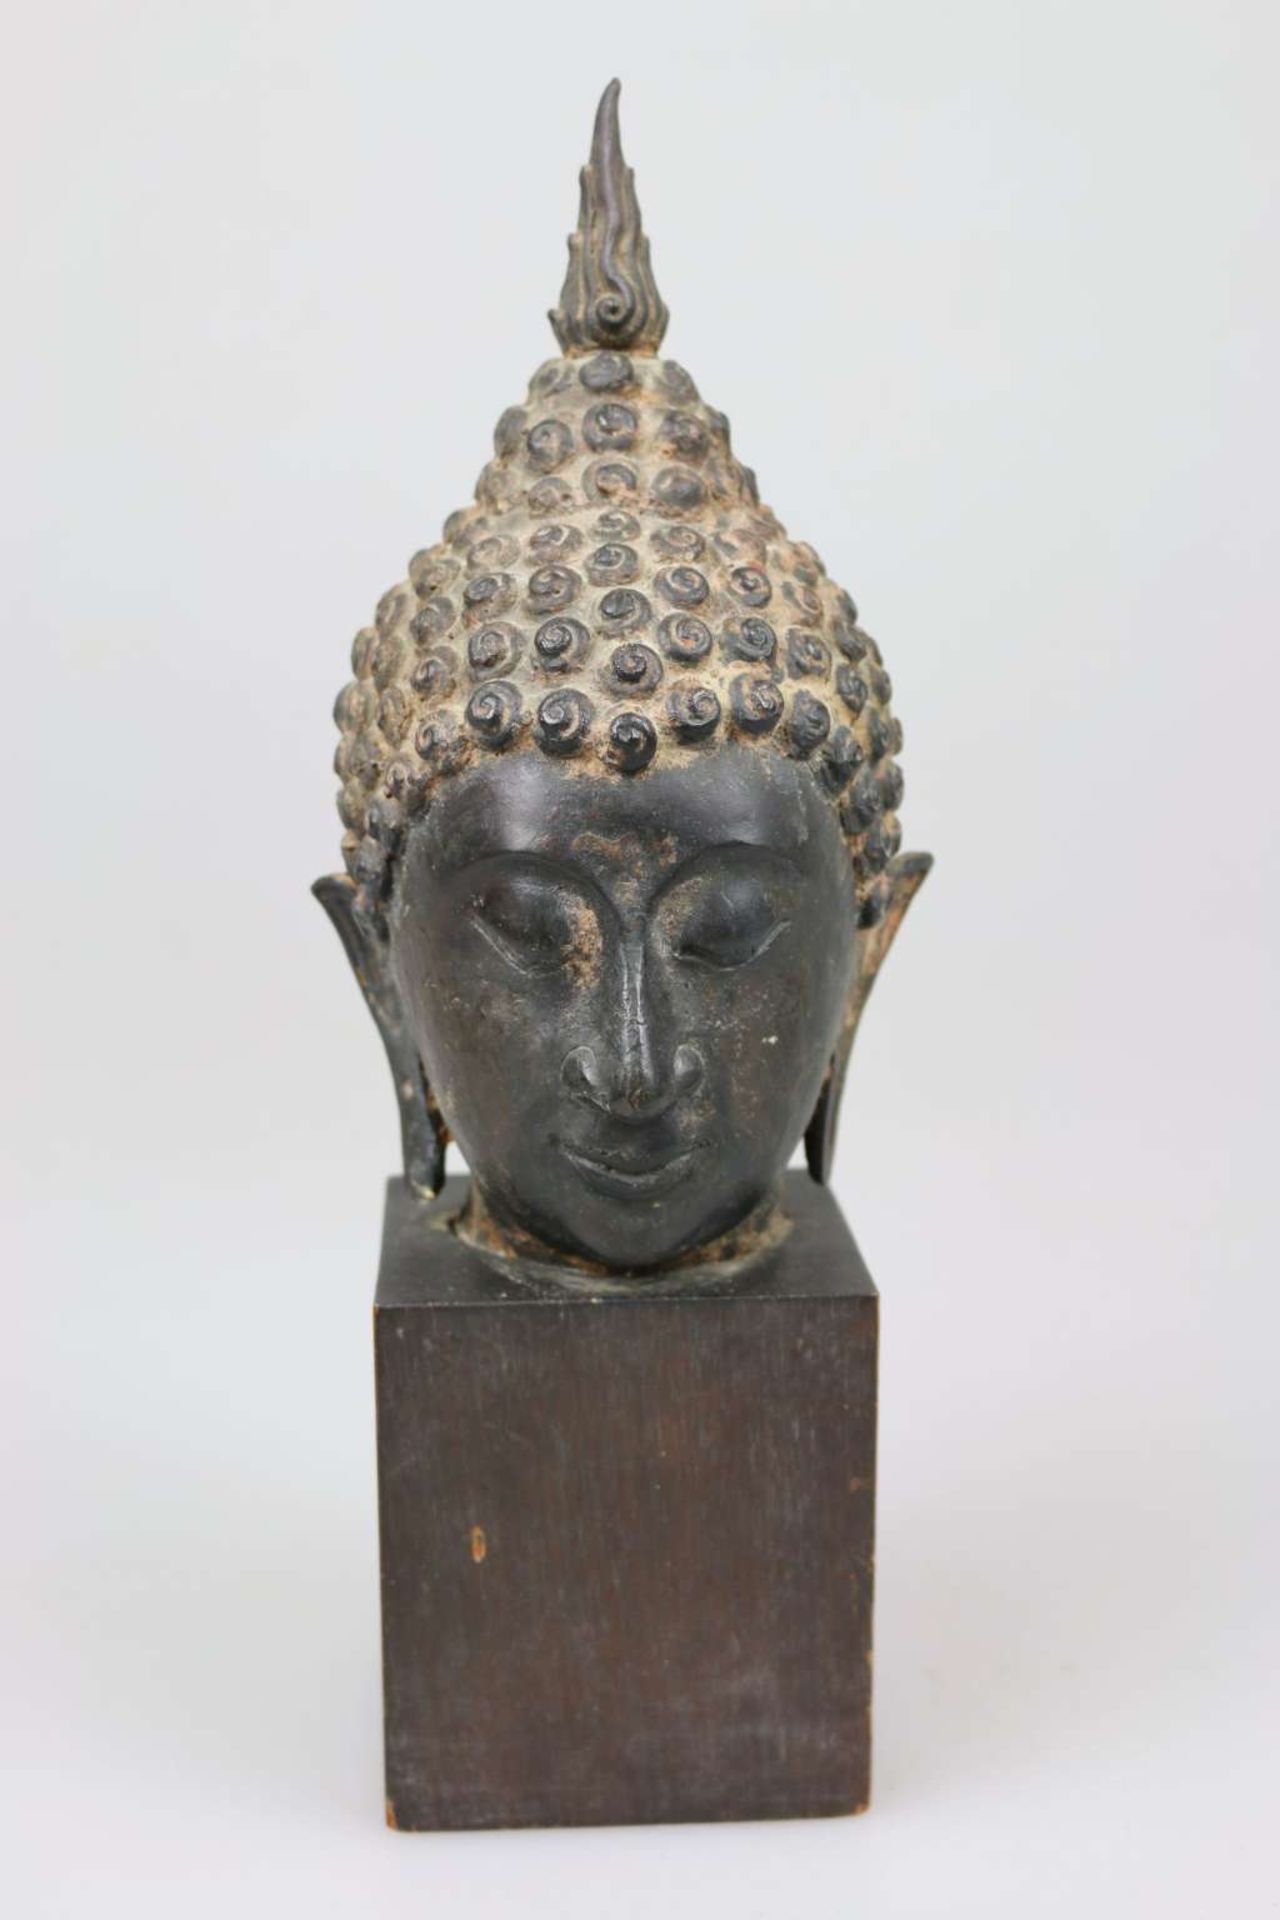 Buddhakopf